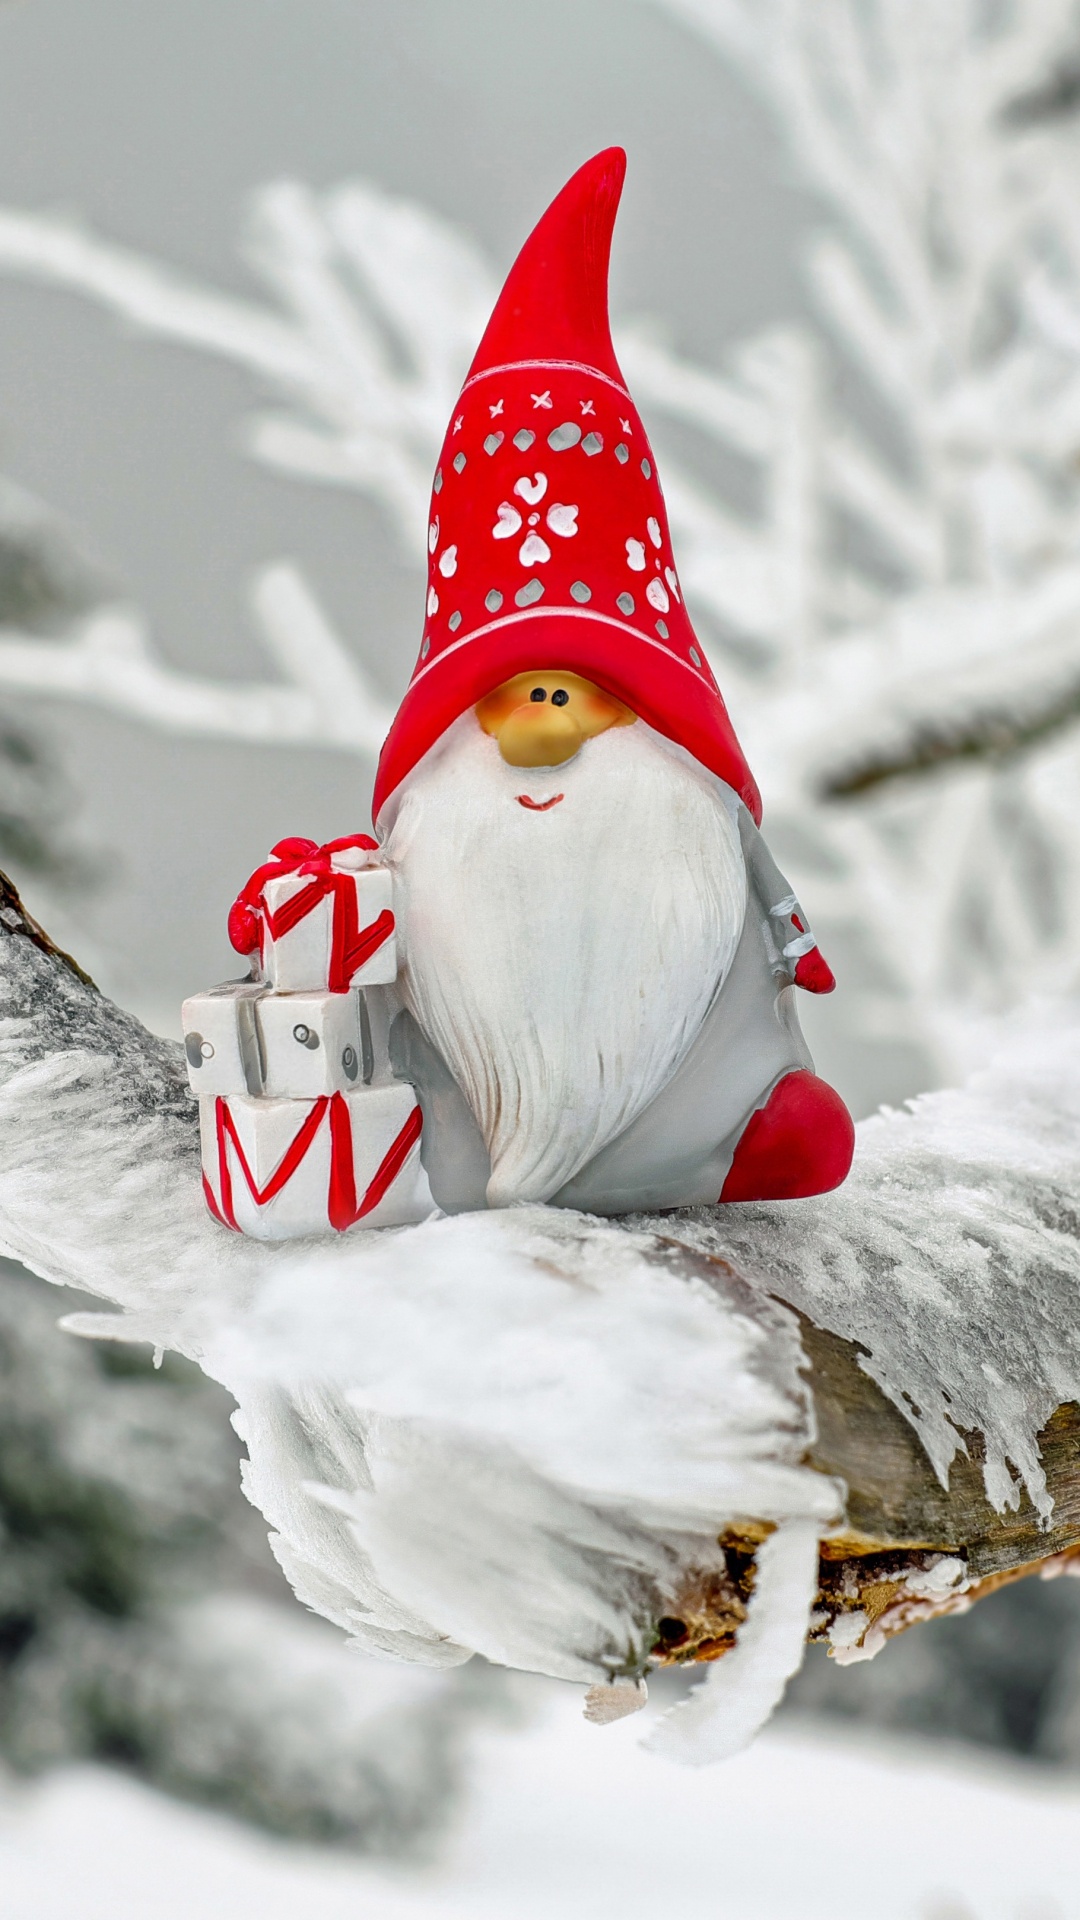 Weihnachtsmann, Weihnachten, Winter, Schnee, Einfrieren. Wallpaper in 1080x1920 Resolution